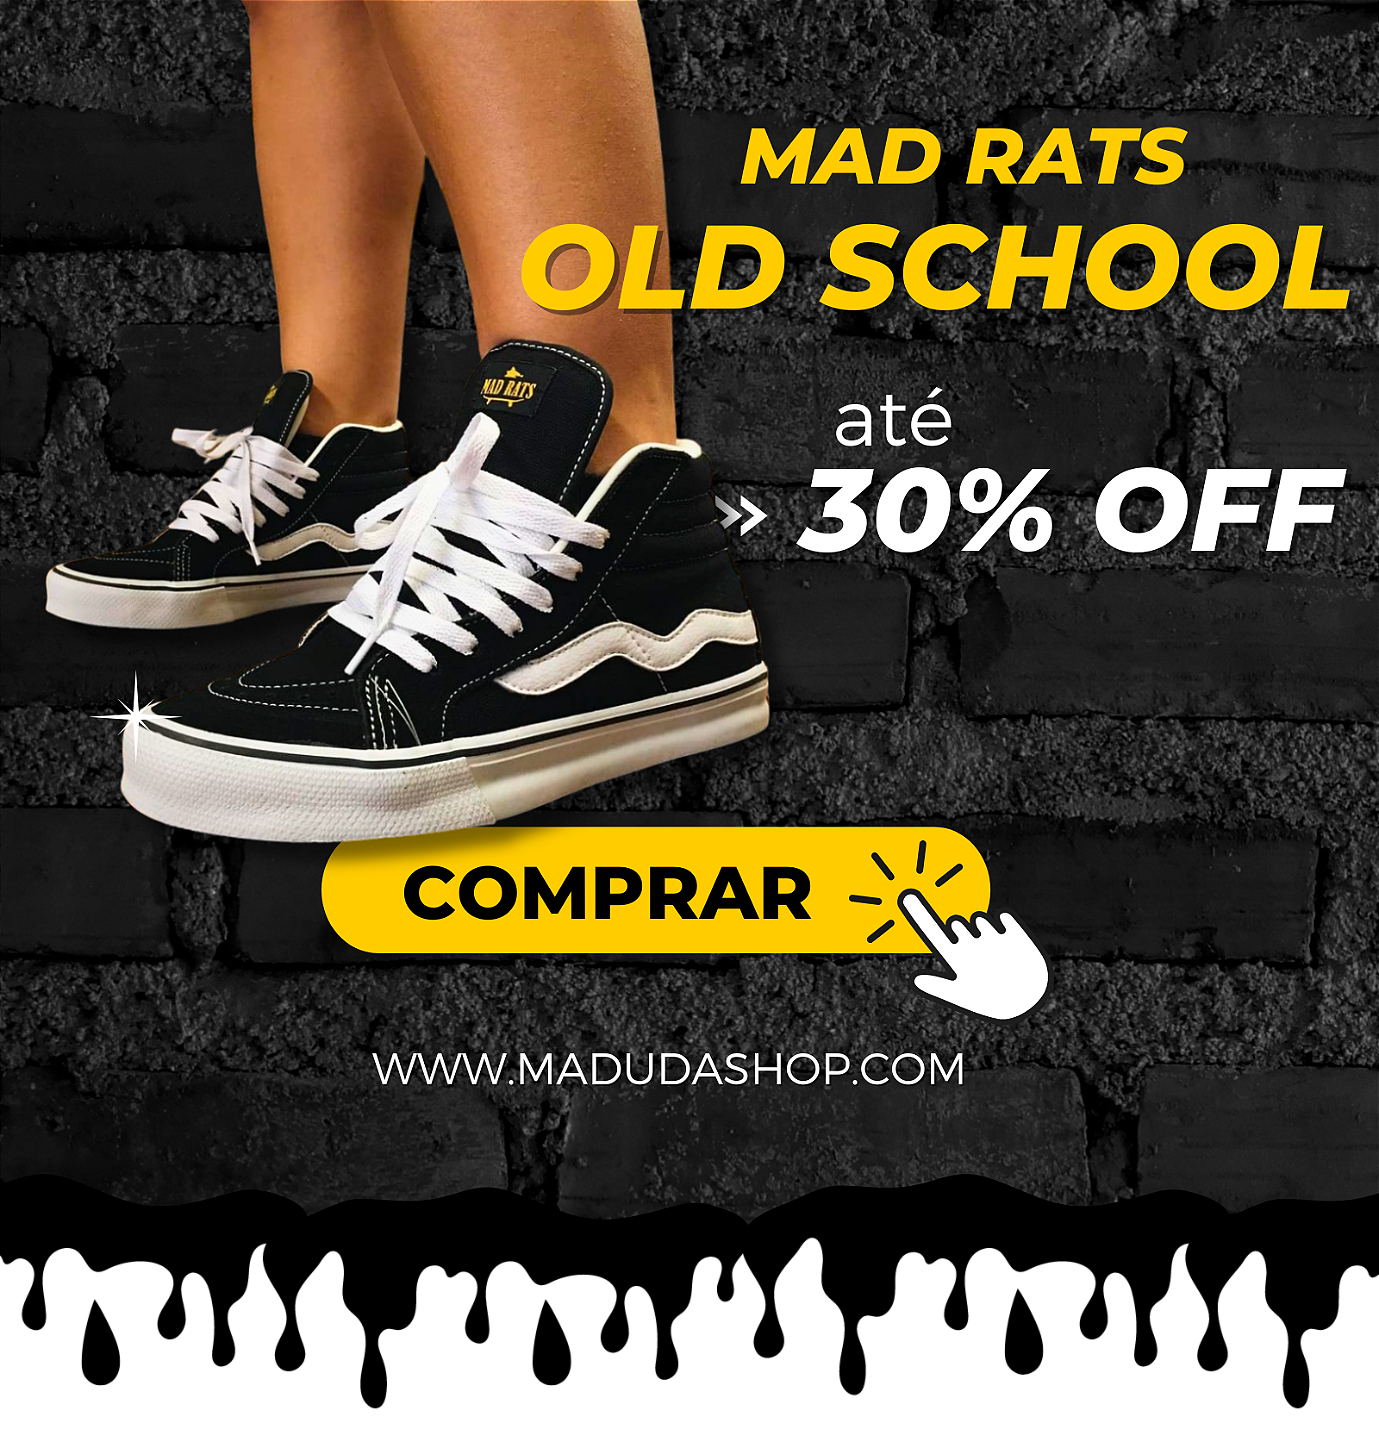 Tênis Hi Top Old School Mad Rats Cano Alto Skate - Maduda Shop